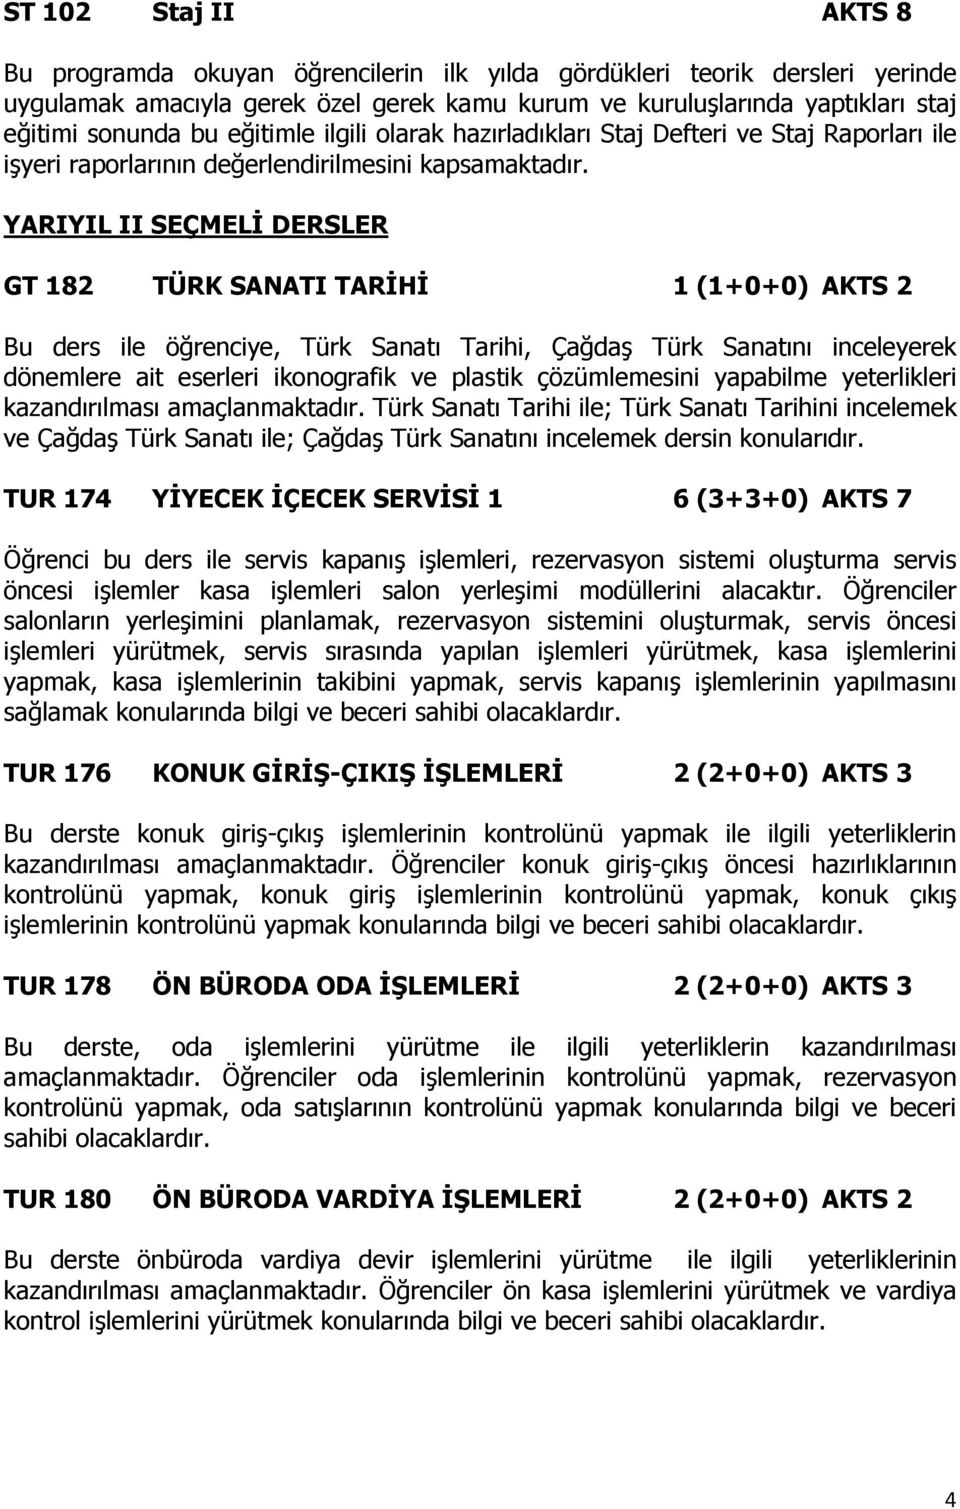 YARIYIL II SEÇMELİ DERSLER GT 182 TÜRK SANATI TARİHİ 1 (1+0+0) AKTS 2 Bu ders ile öğrenciye, Türk Sanatı Tarihi, Çağdaş Türk Sanatını inceleyerek dönemlere ait eserleri ikonografik ve plastik